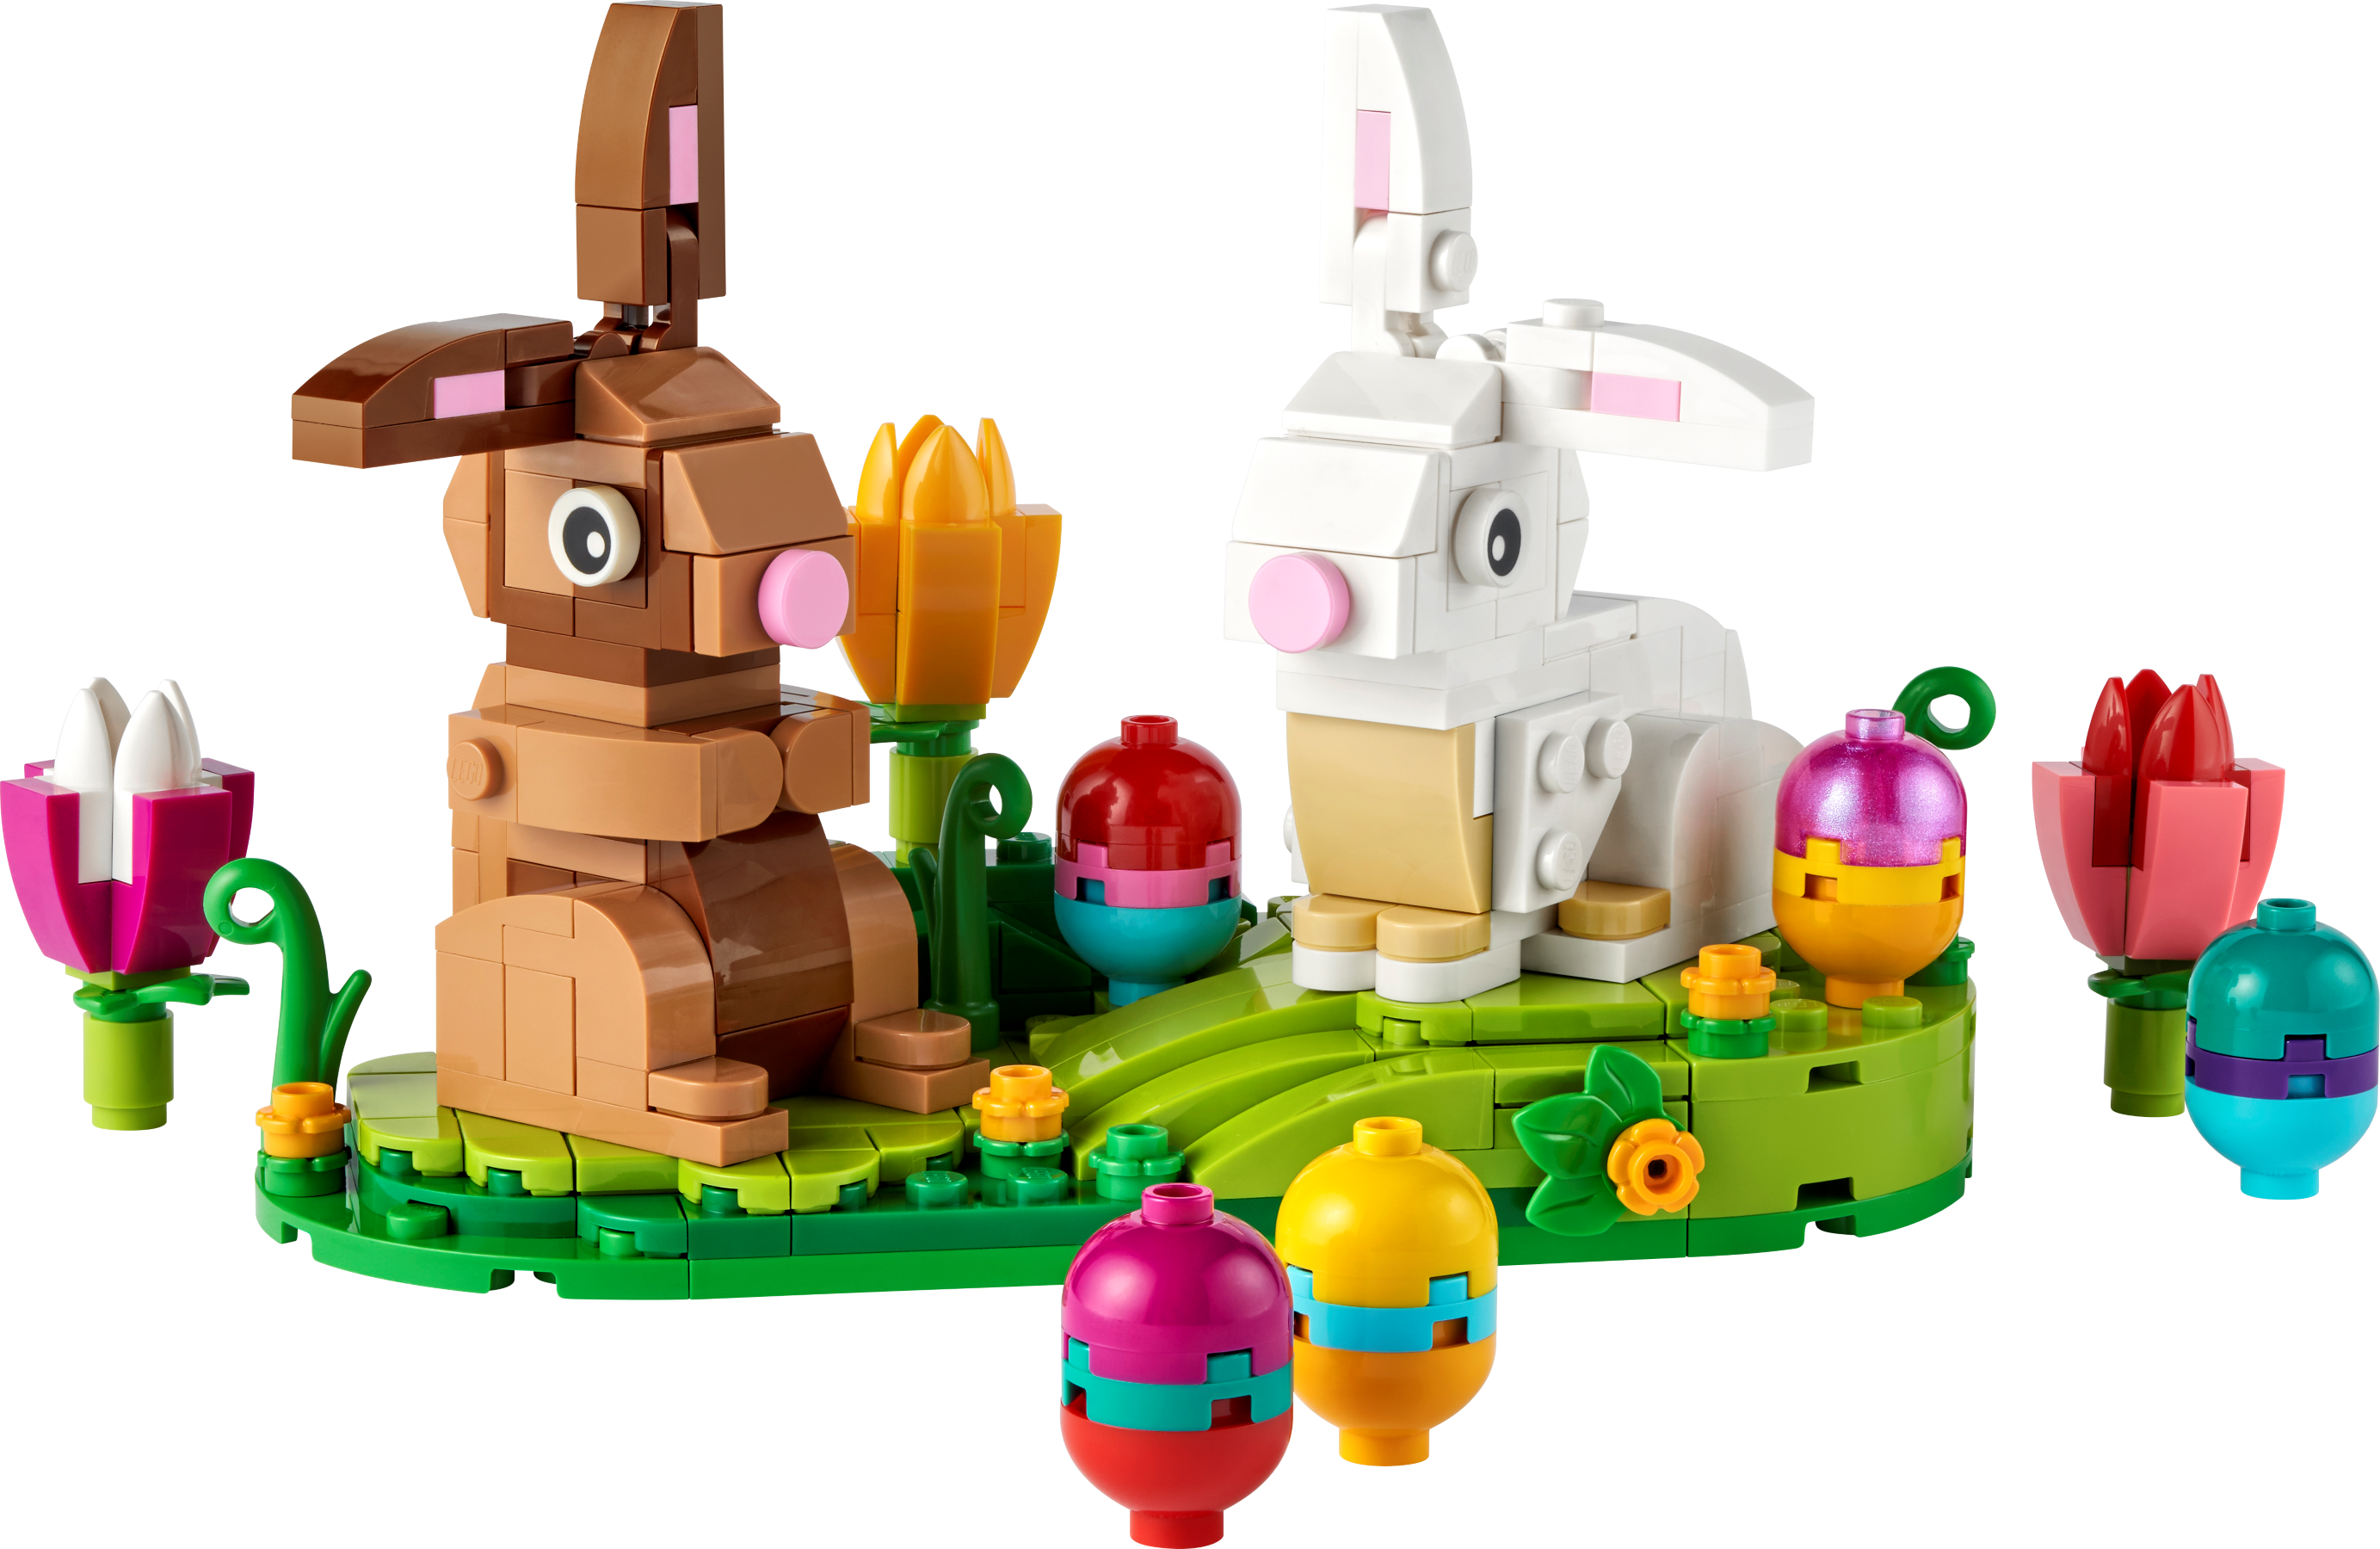 2016 49 pieces Lego Bunny #40210 